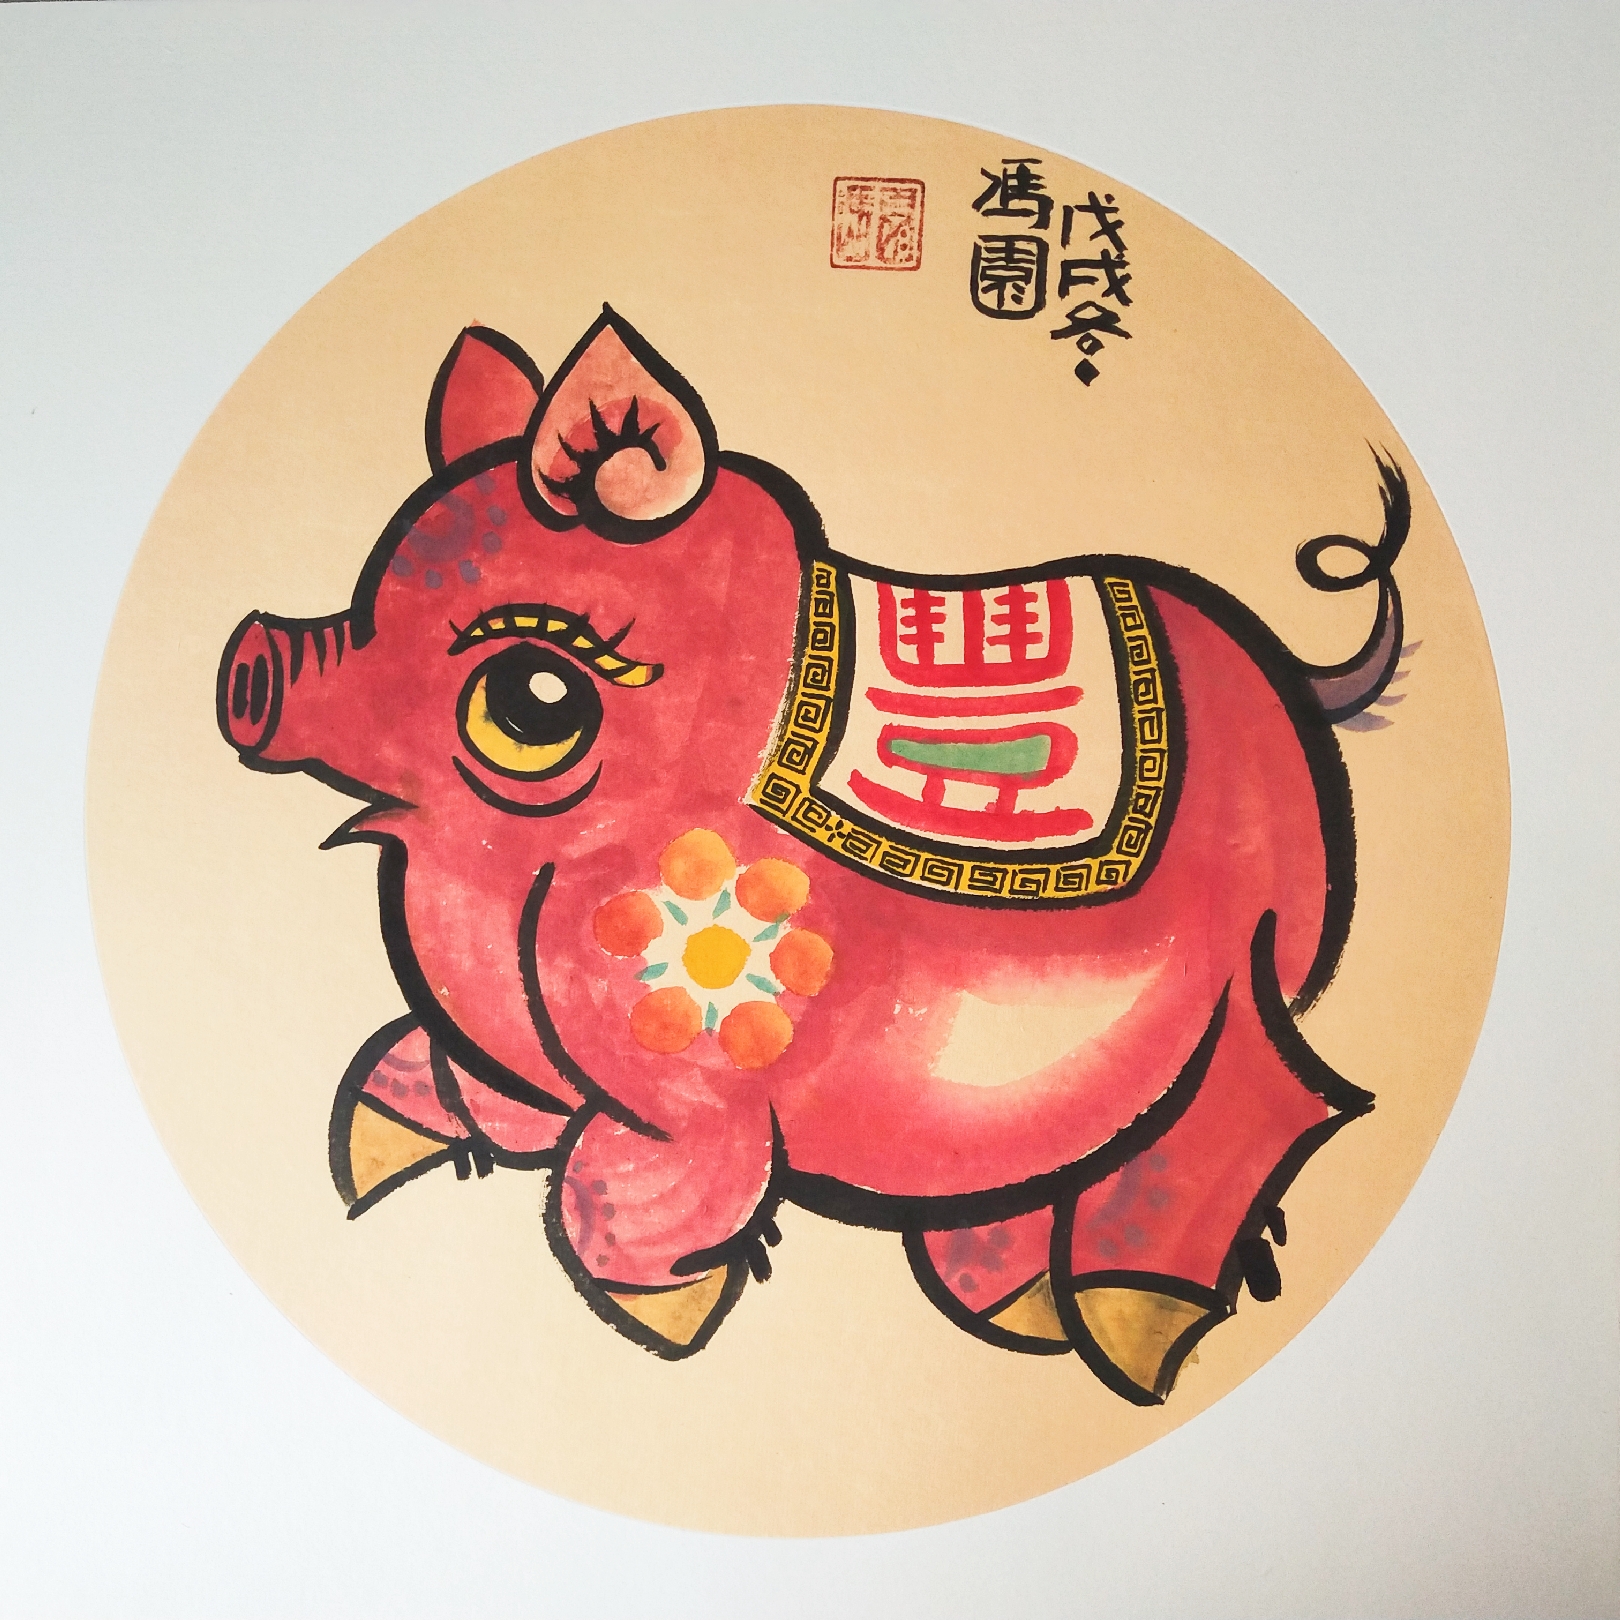 十二生肖猪的画法图片